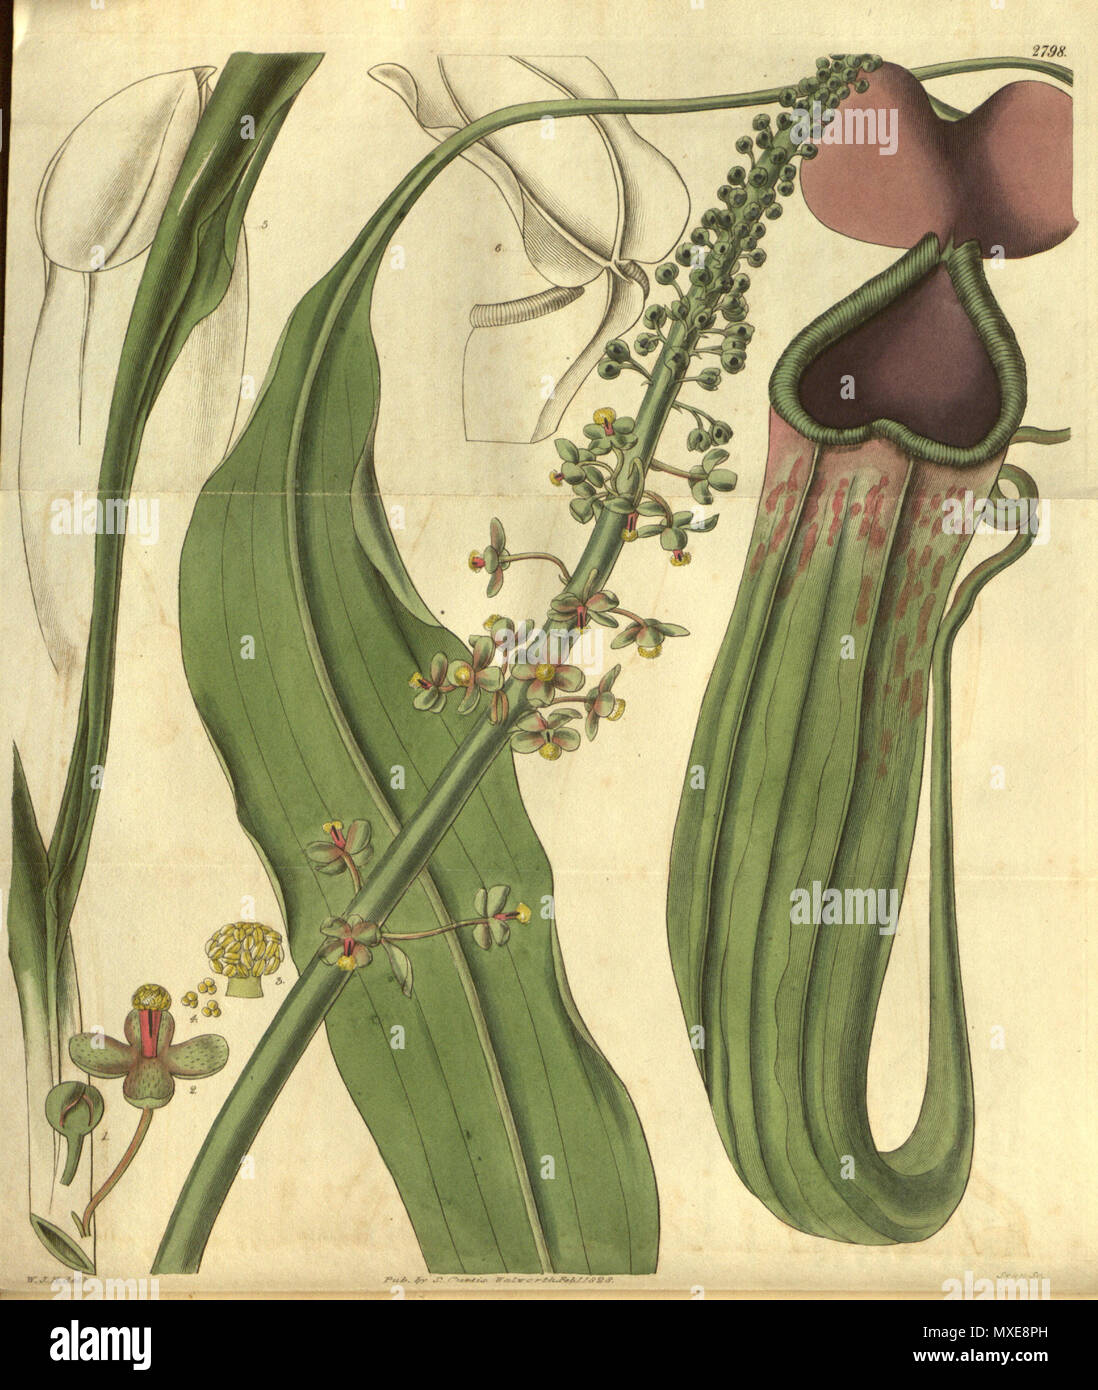 441 Nepenthes khasiana - Curtis’s Botanical Magazine (1828) Stock Photo